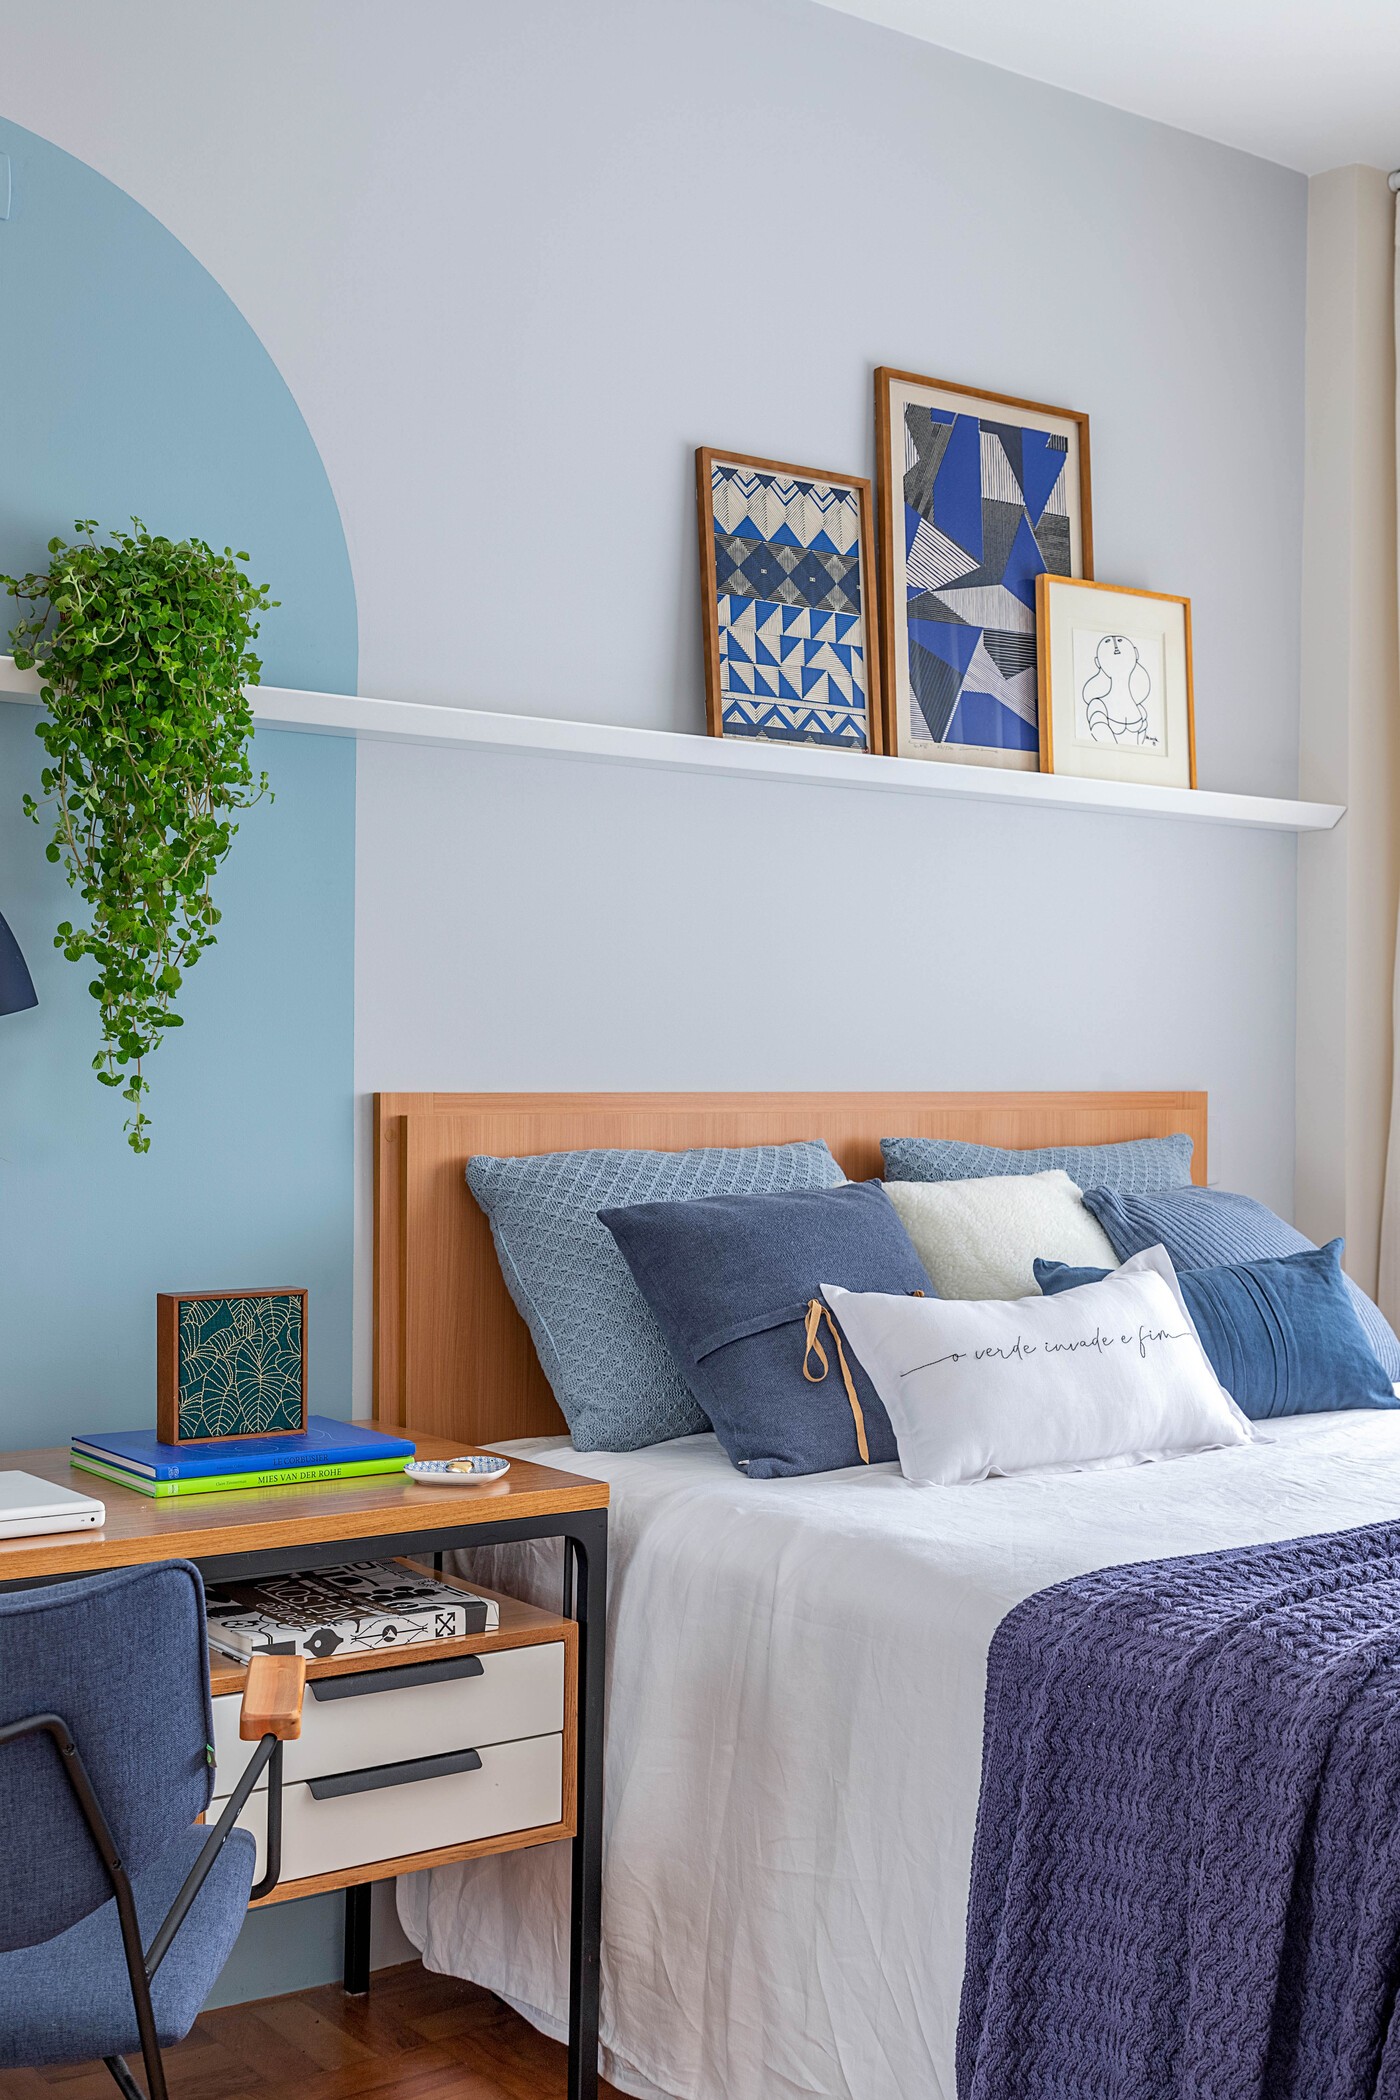 Décor do dia: quarto com tons de azul tem home office e arco na parede (Foto: Rafael Renzo)